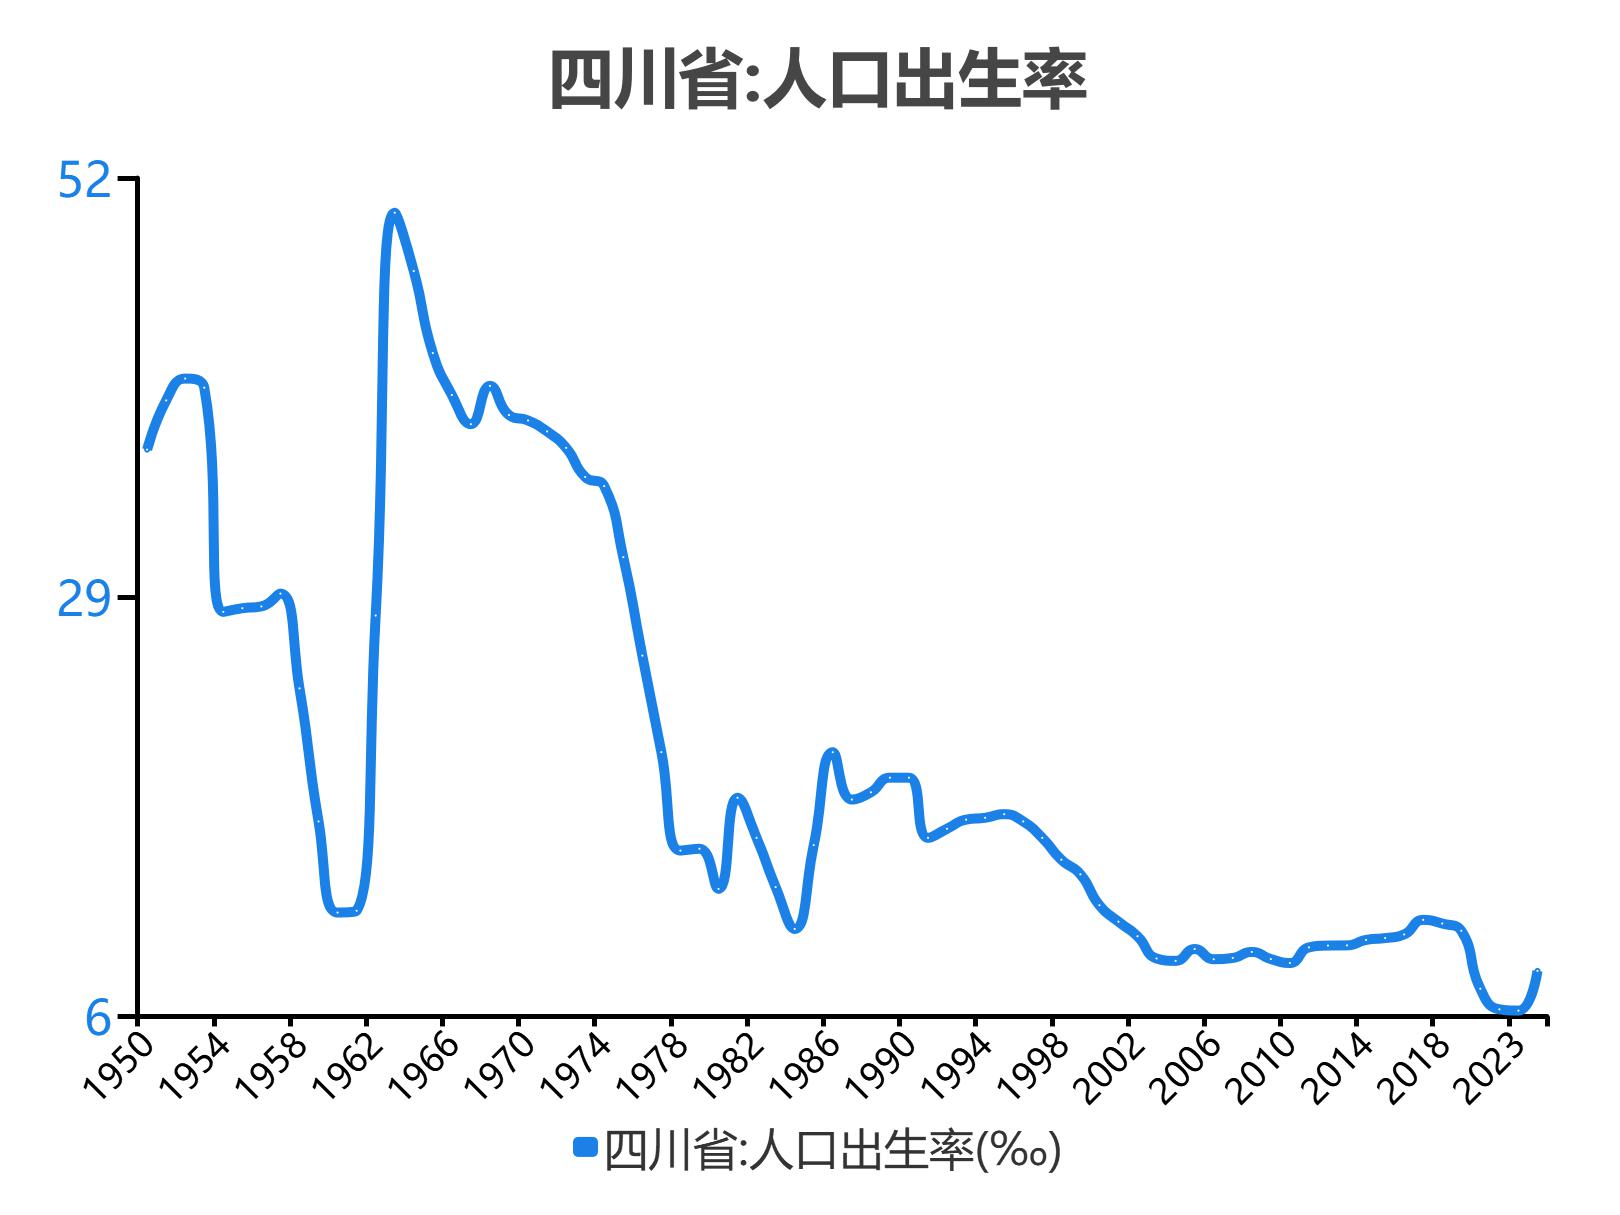 四川省:人口出生率,2021期数据为752‰数据来源:国家统计局